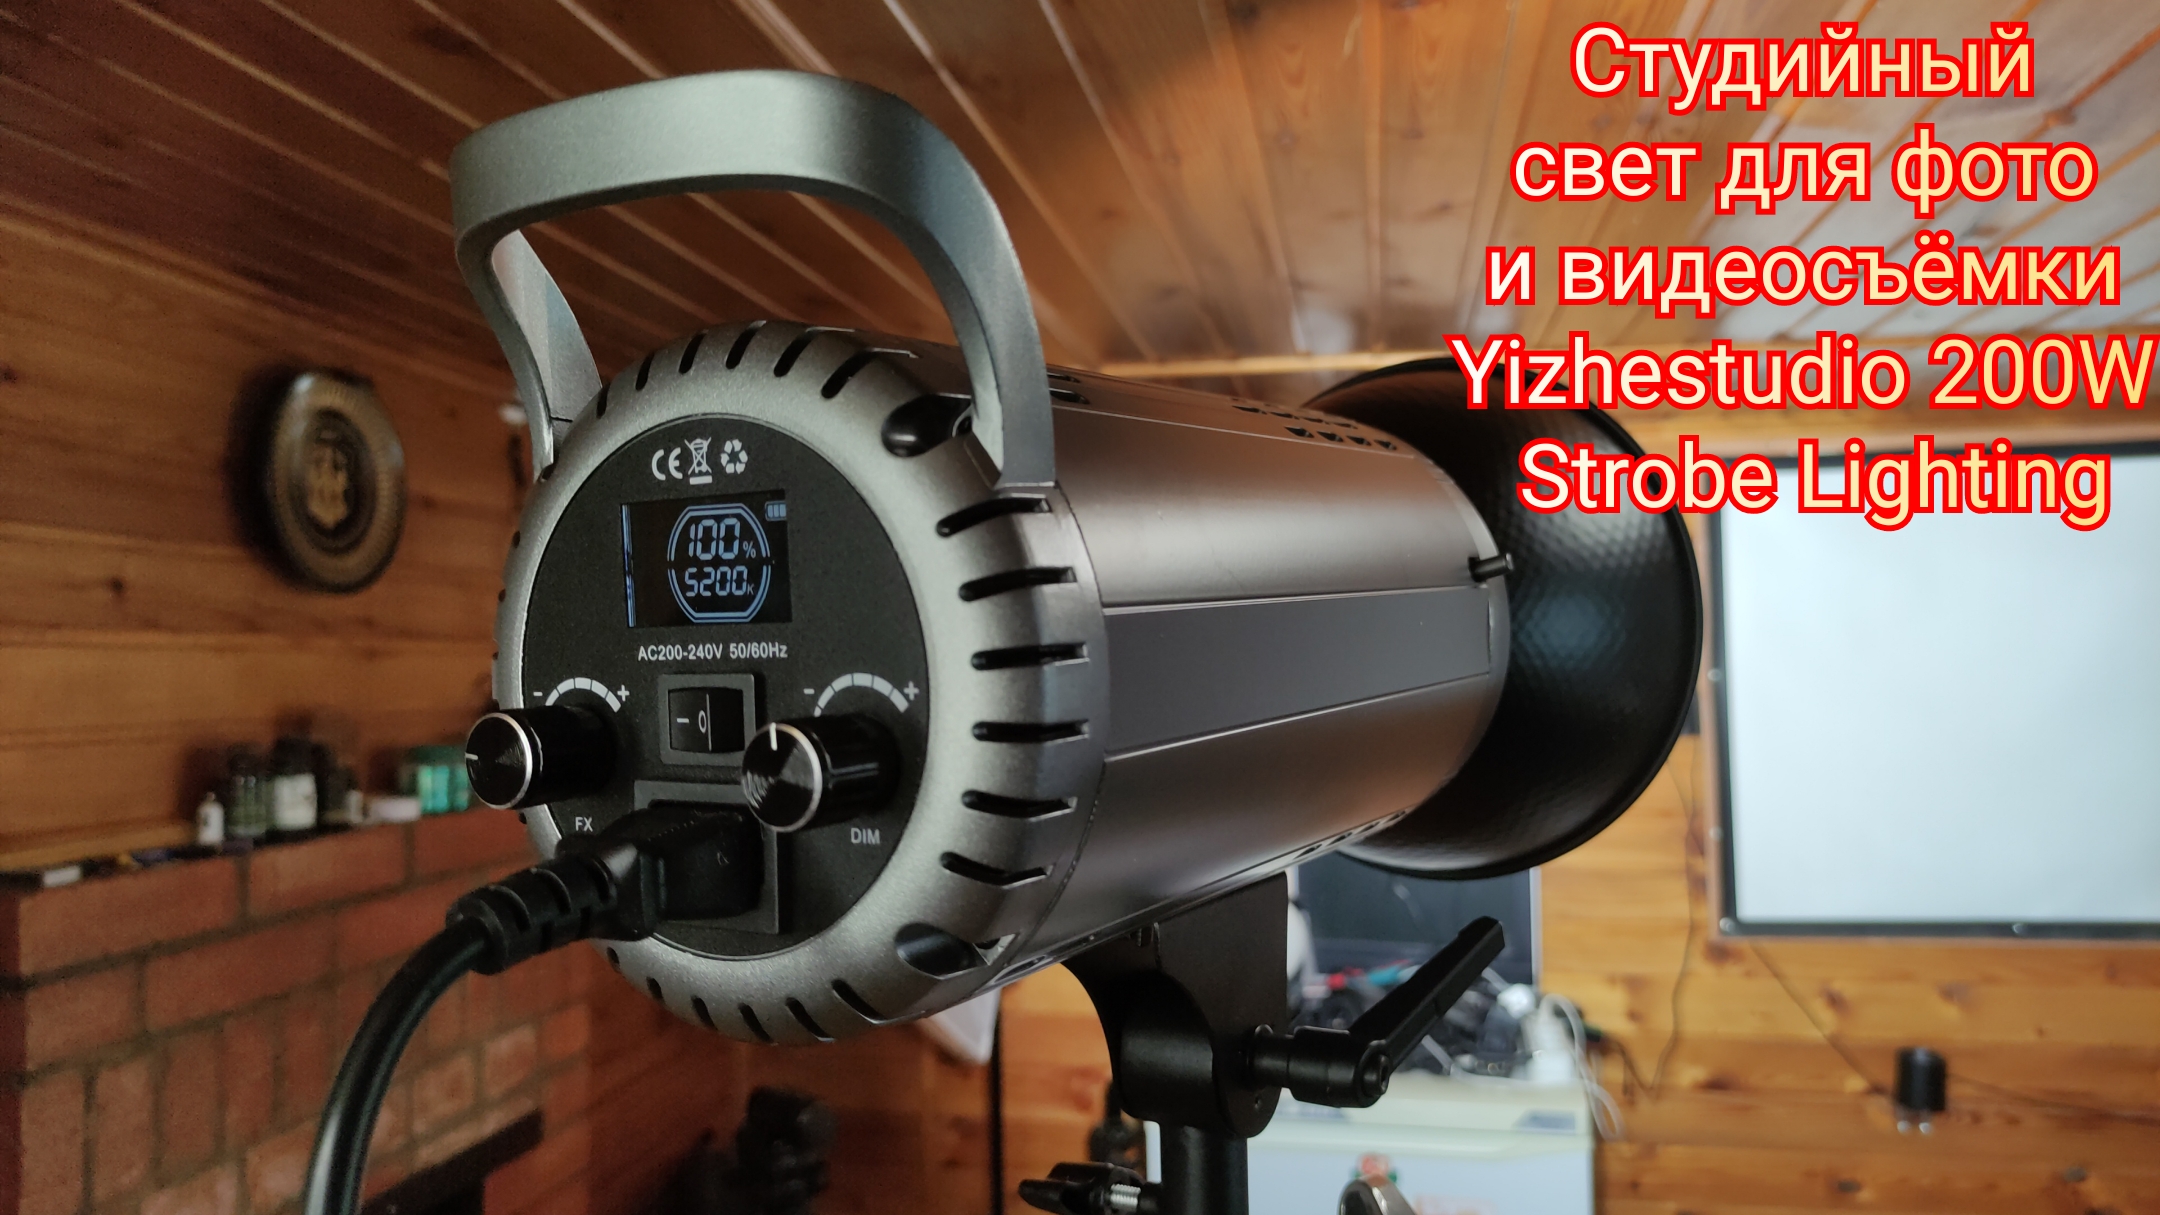 Студийный свет для фото и видеосъёмки Yizhestudio 200W Strobe Lighting